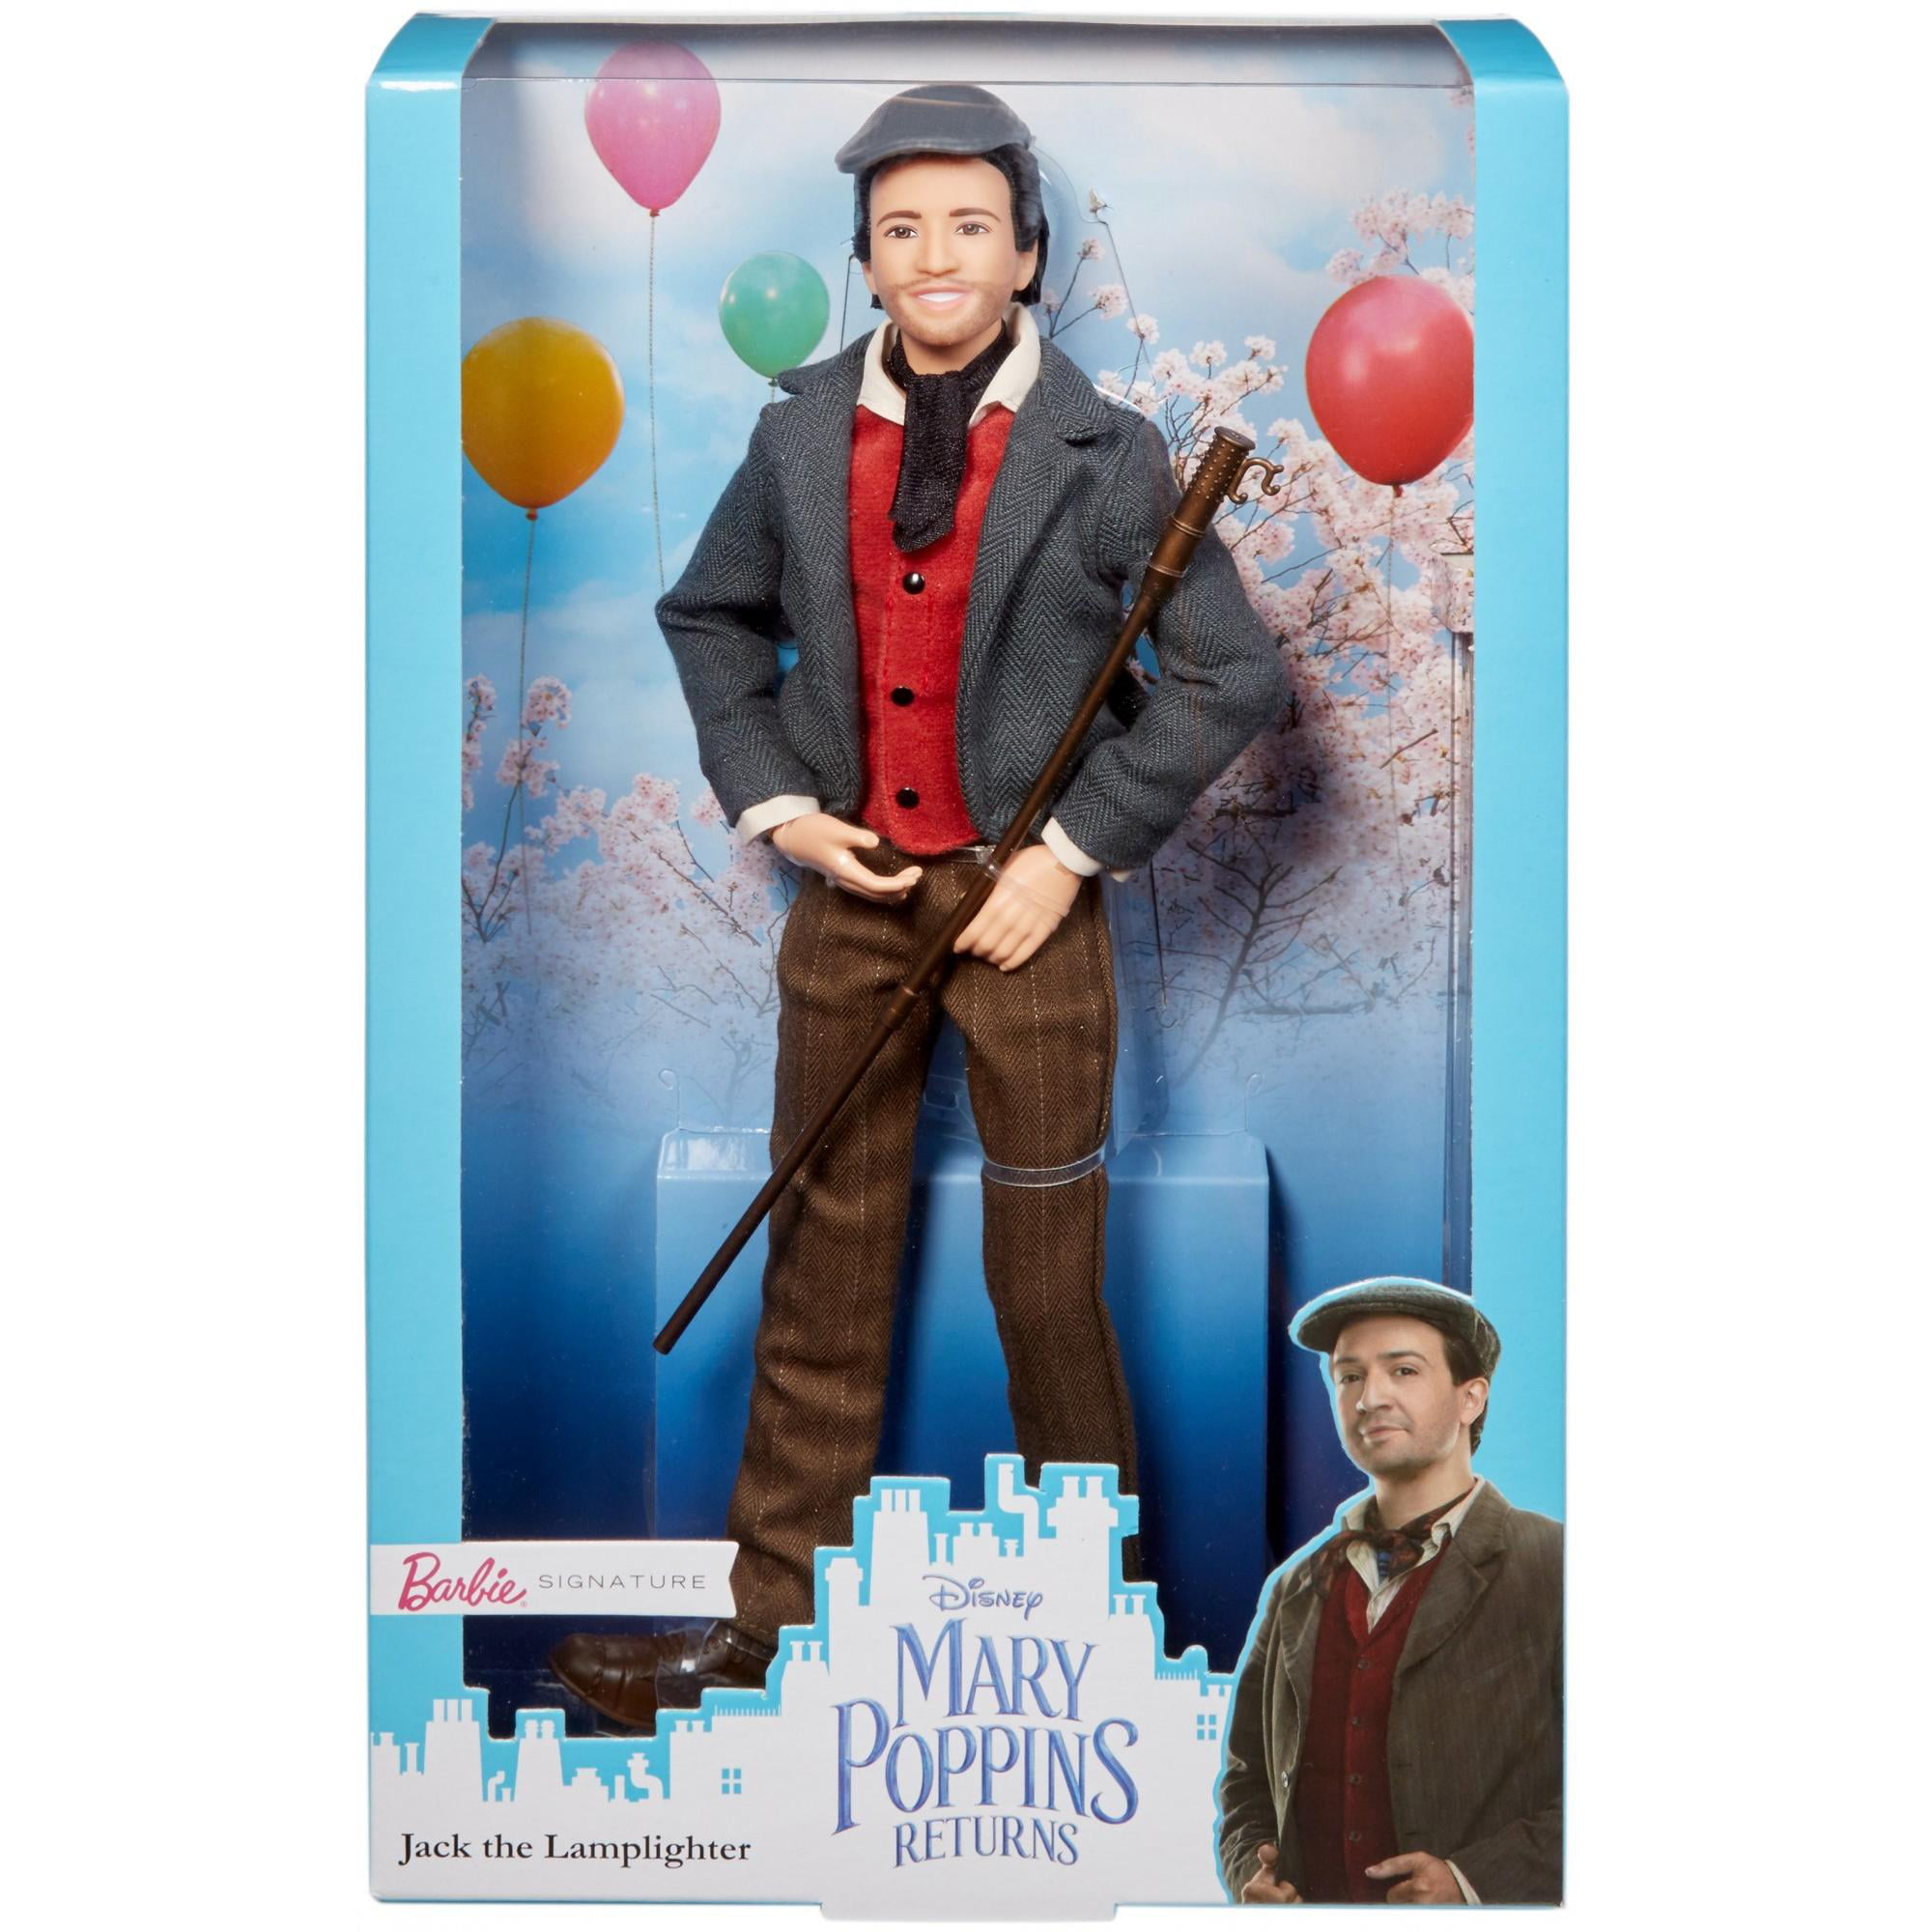 Bewijzen Knikken Aan boord Disney Mary Poppins Returns Jack the Lamplighter Barbie Doll - Walmart.com